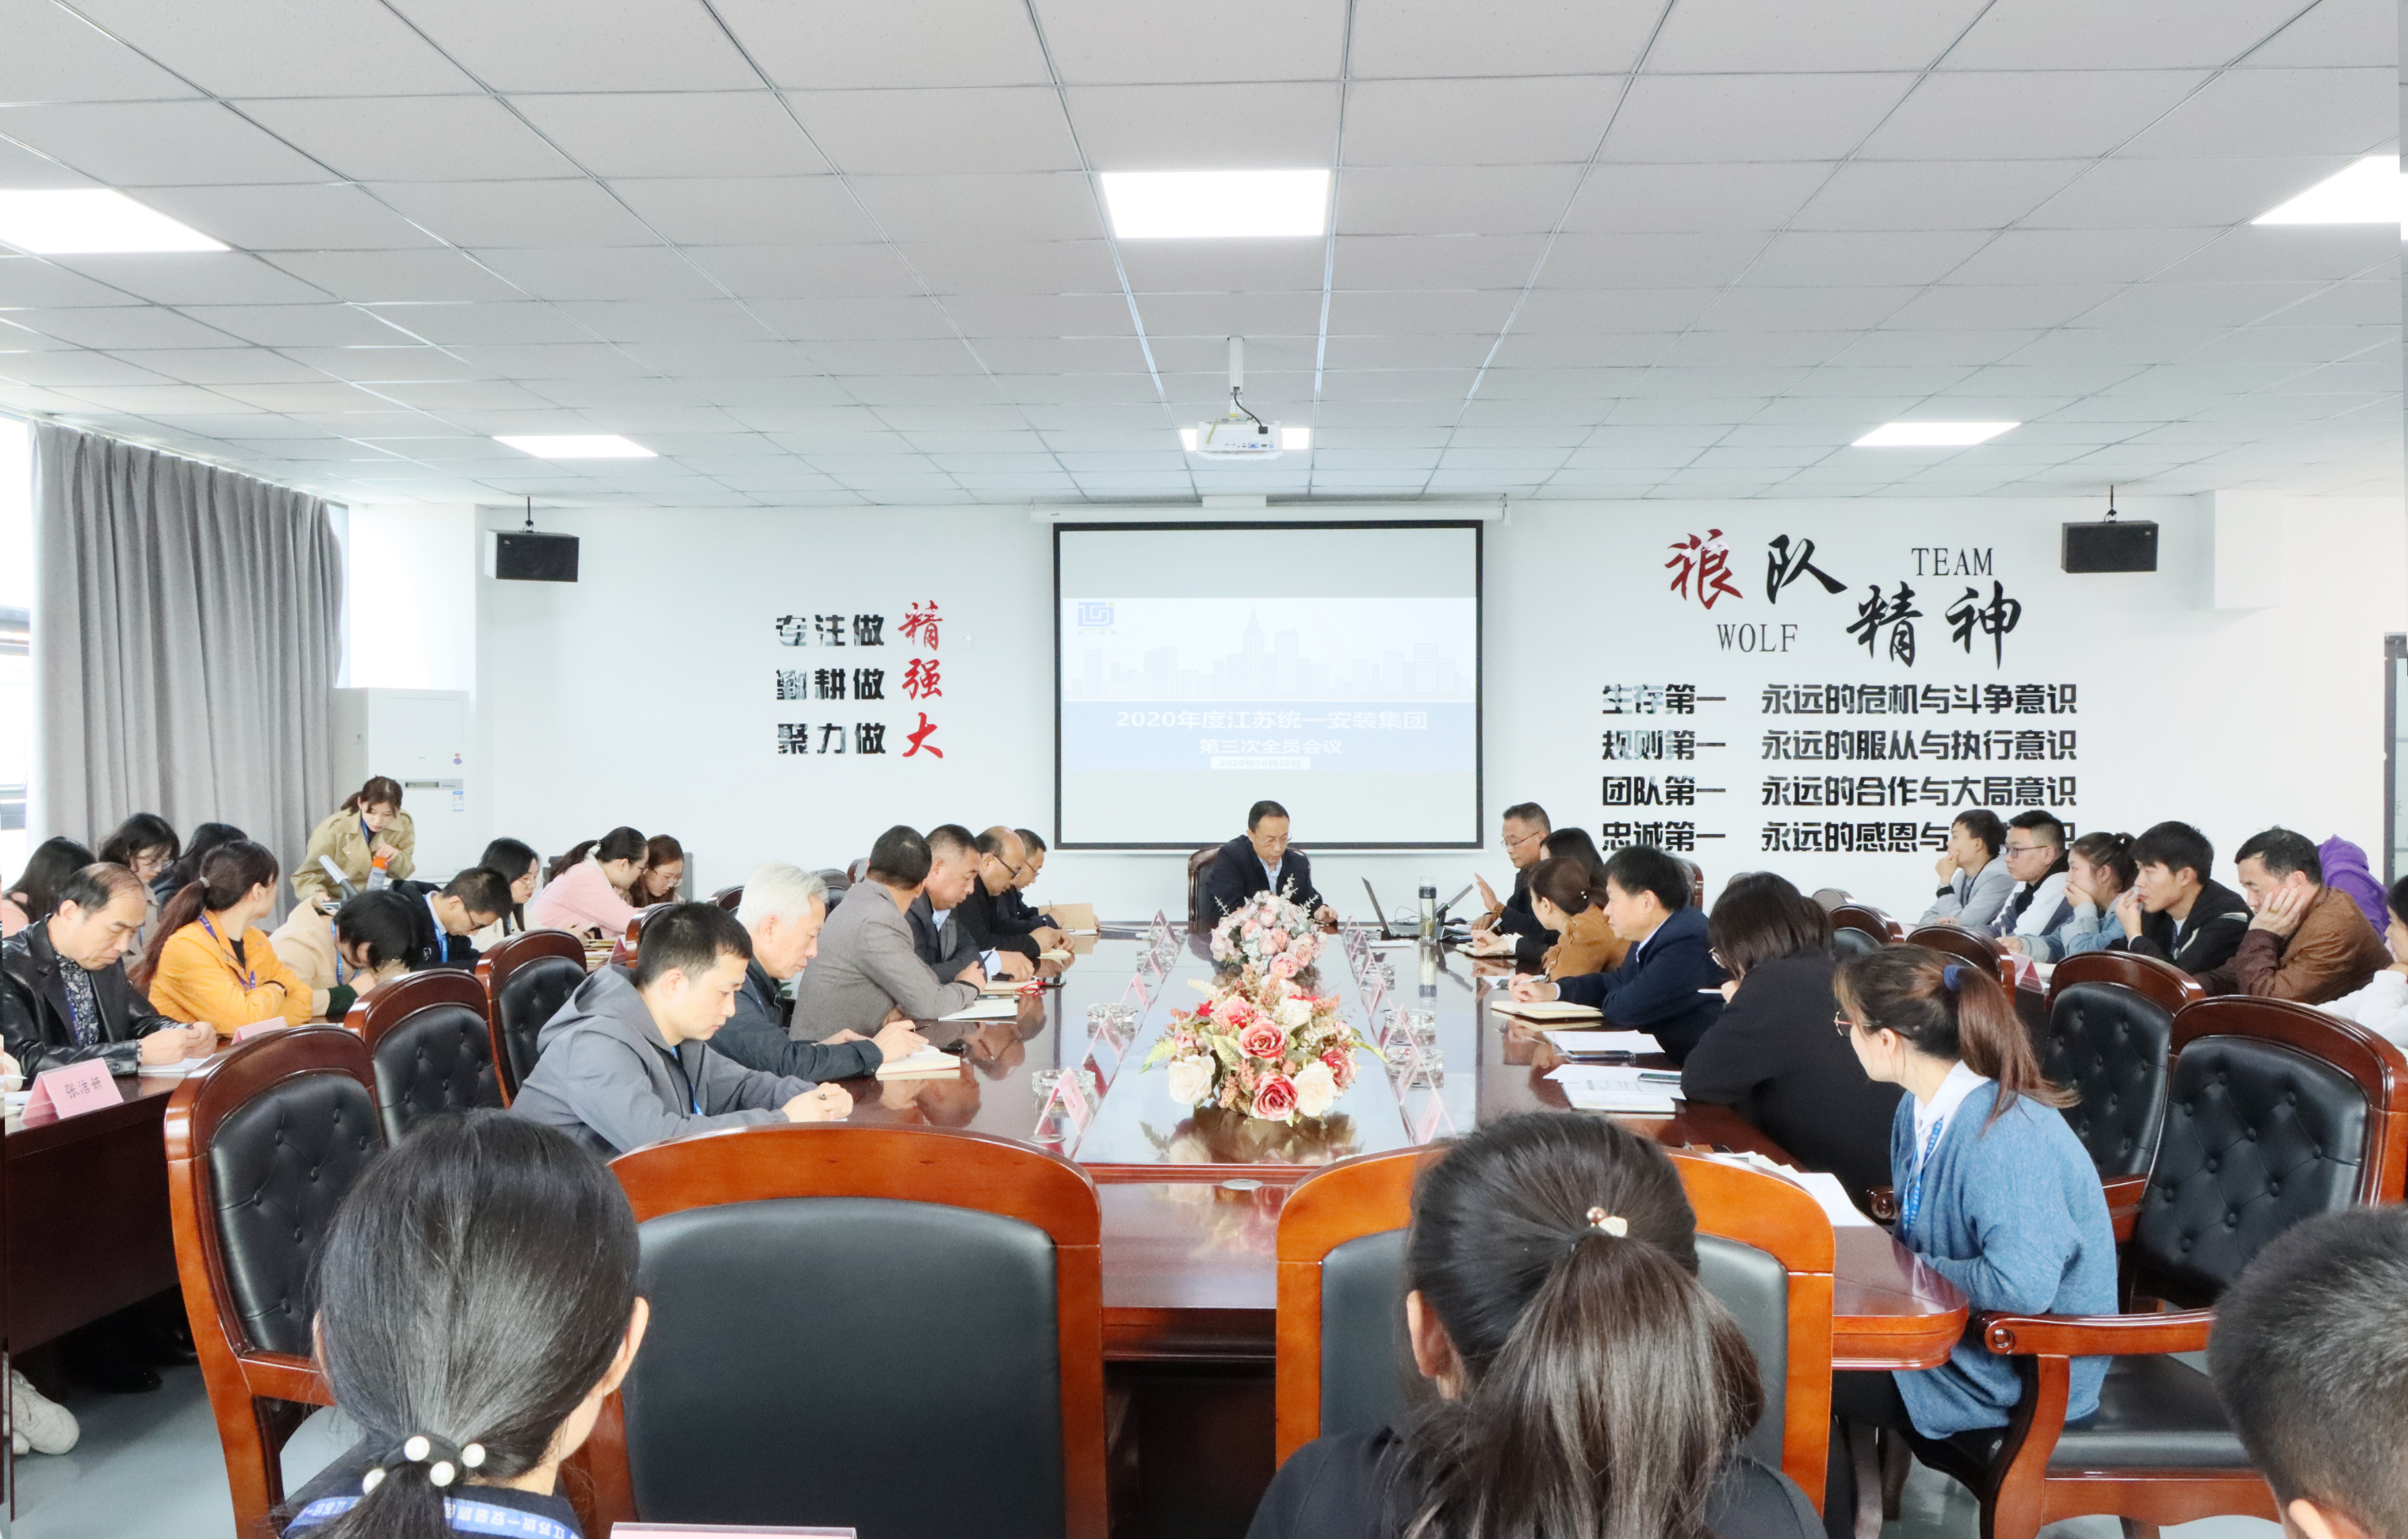 江苏新利体育召开2020年度第三次全体员工大会